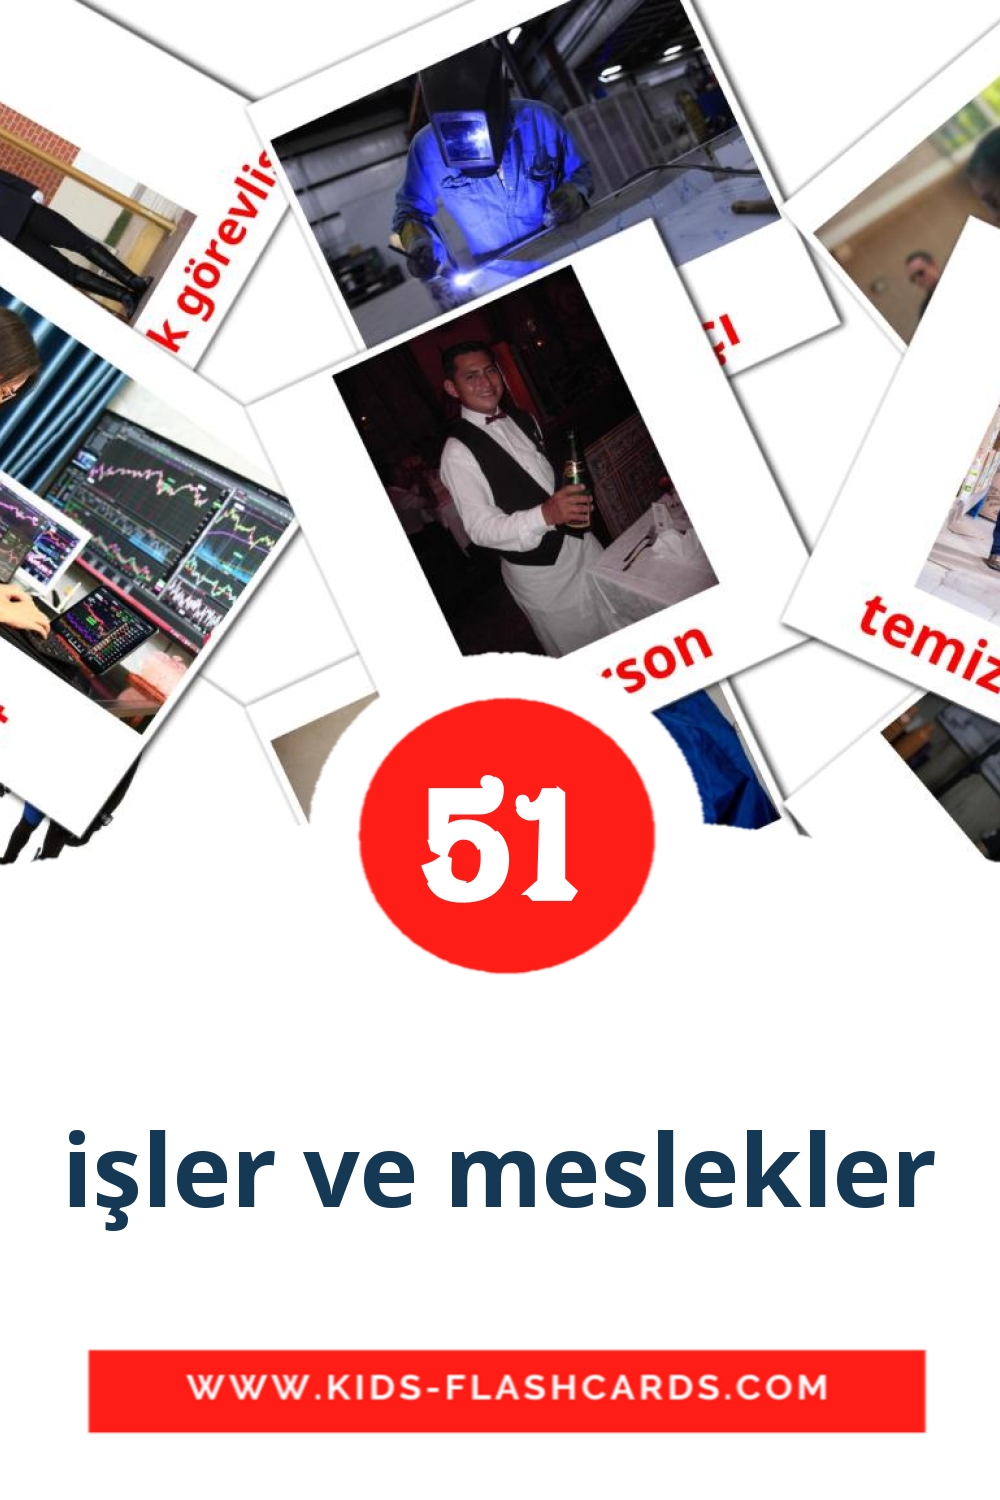 51 tarjetas didacticas de işler ve meslekler para el jardín de infancia en turco